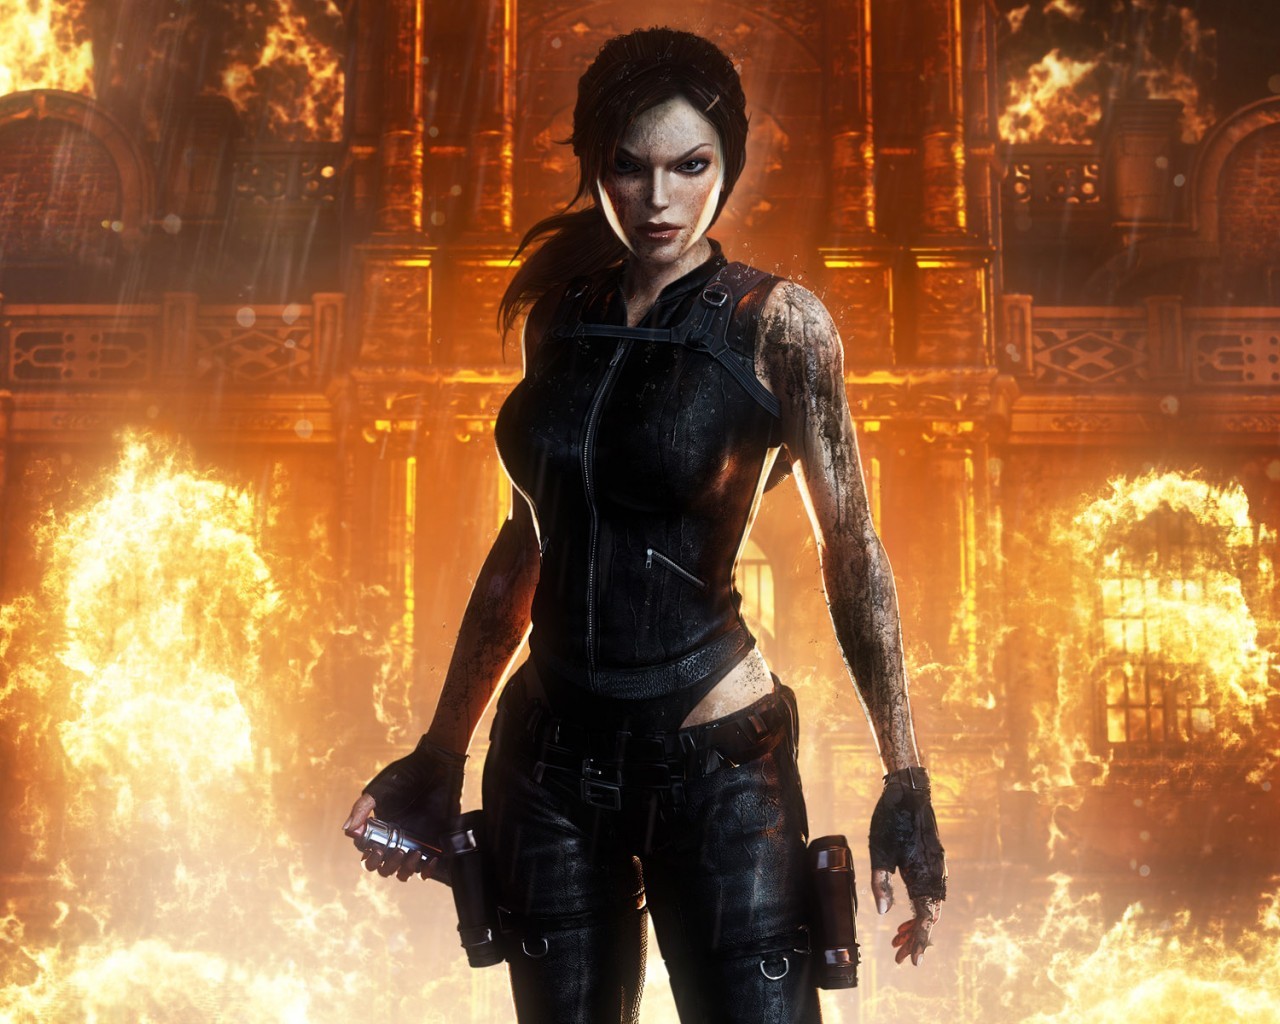 Descarga gratuita de fondo de pantalla para móvil de Tomb Raider, Juegos.